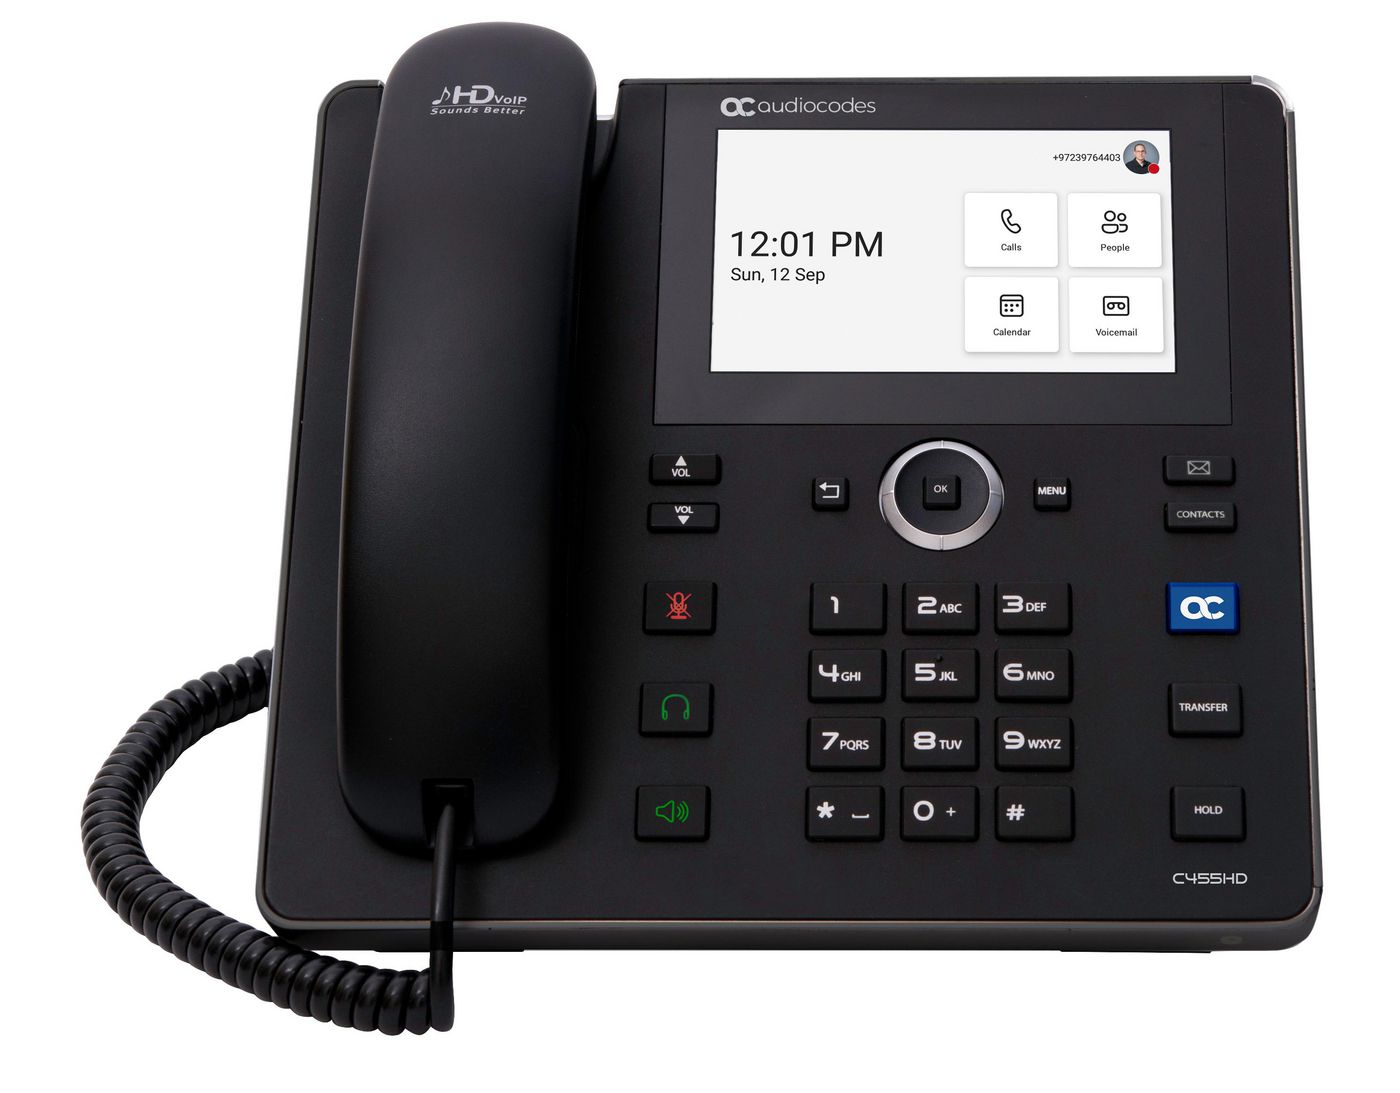 AUDIOCODES C455HD - VoIP-Telefon mit Rufnummernanzeige - RTCP, RTP, SRTP - 8 Leitungen